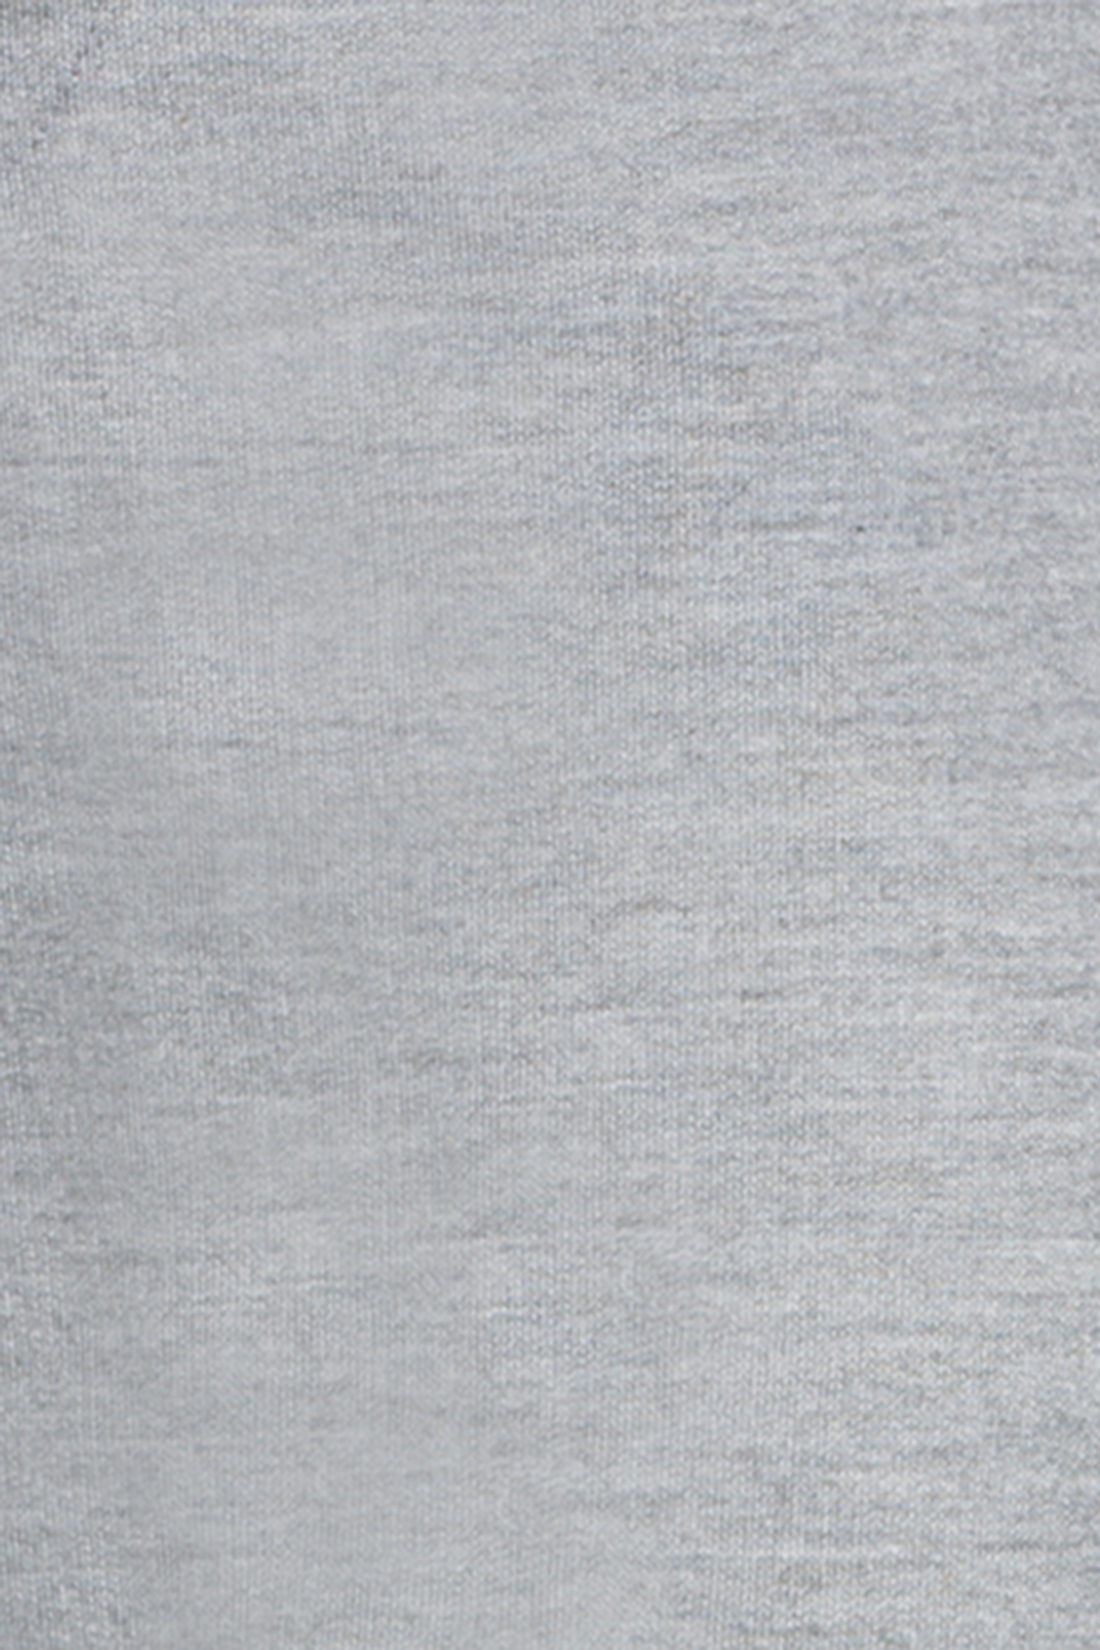 Спортивные брюки с манжетами (арт. baon B797301), размер XL, цвет cold grey melange#серый Спортивные брюки с манжетами (арт. baon B797301) - фото 3